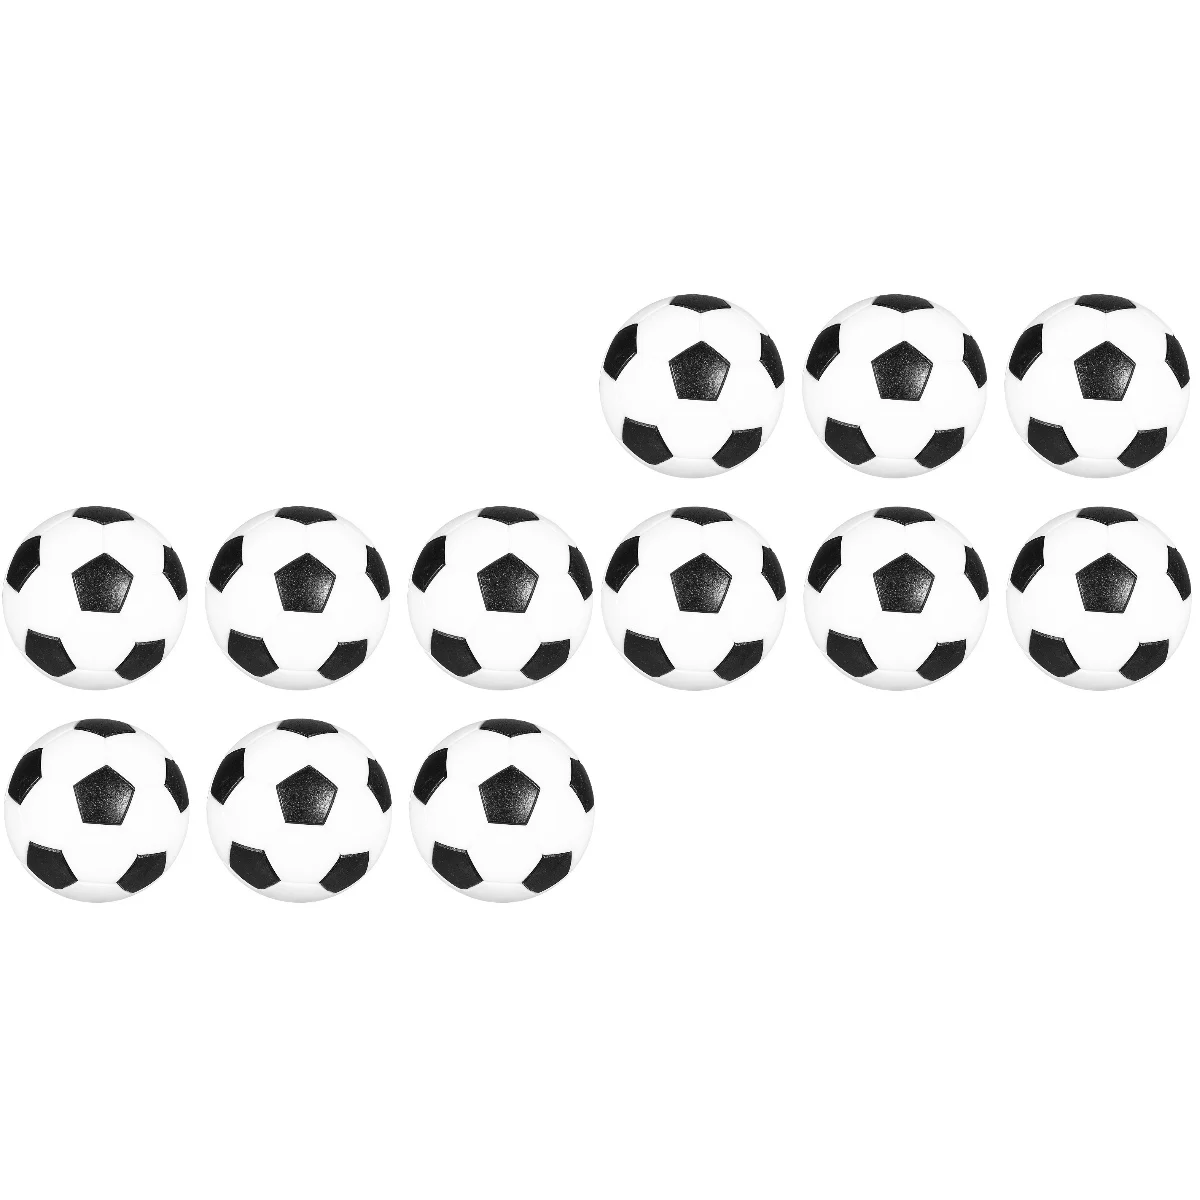 

2 шт. WINOMO, 6 шт. черно-белых мини-мячей, настольный футбольный мяч, 32 мм, сменные футбольные мячи